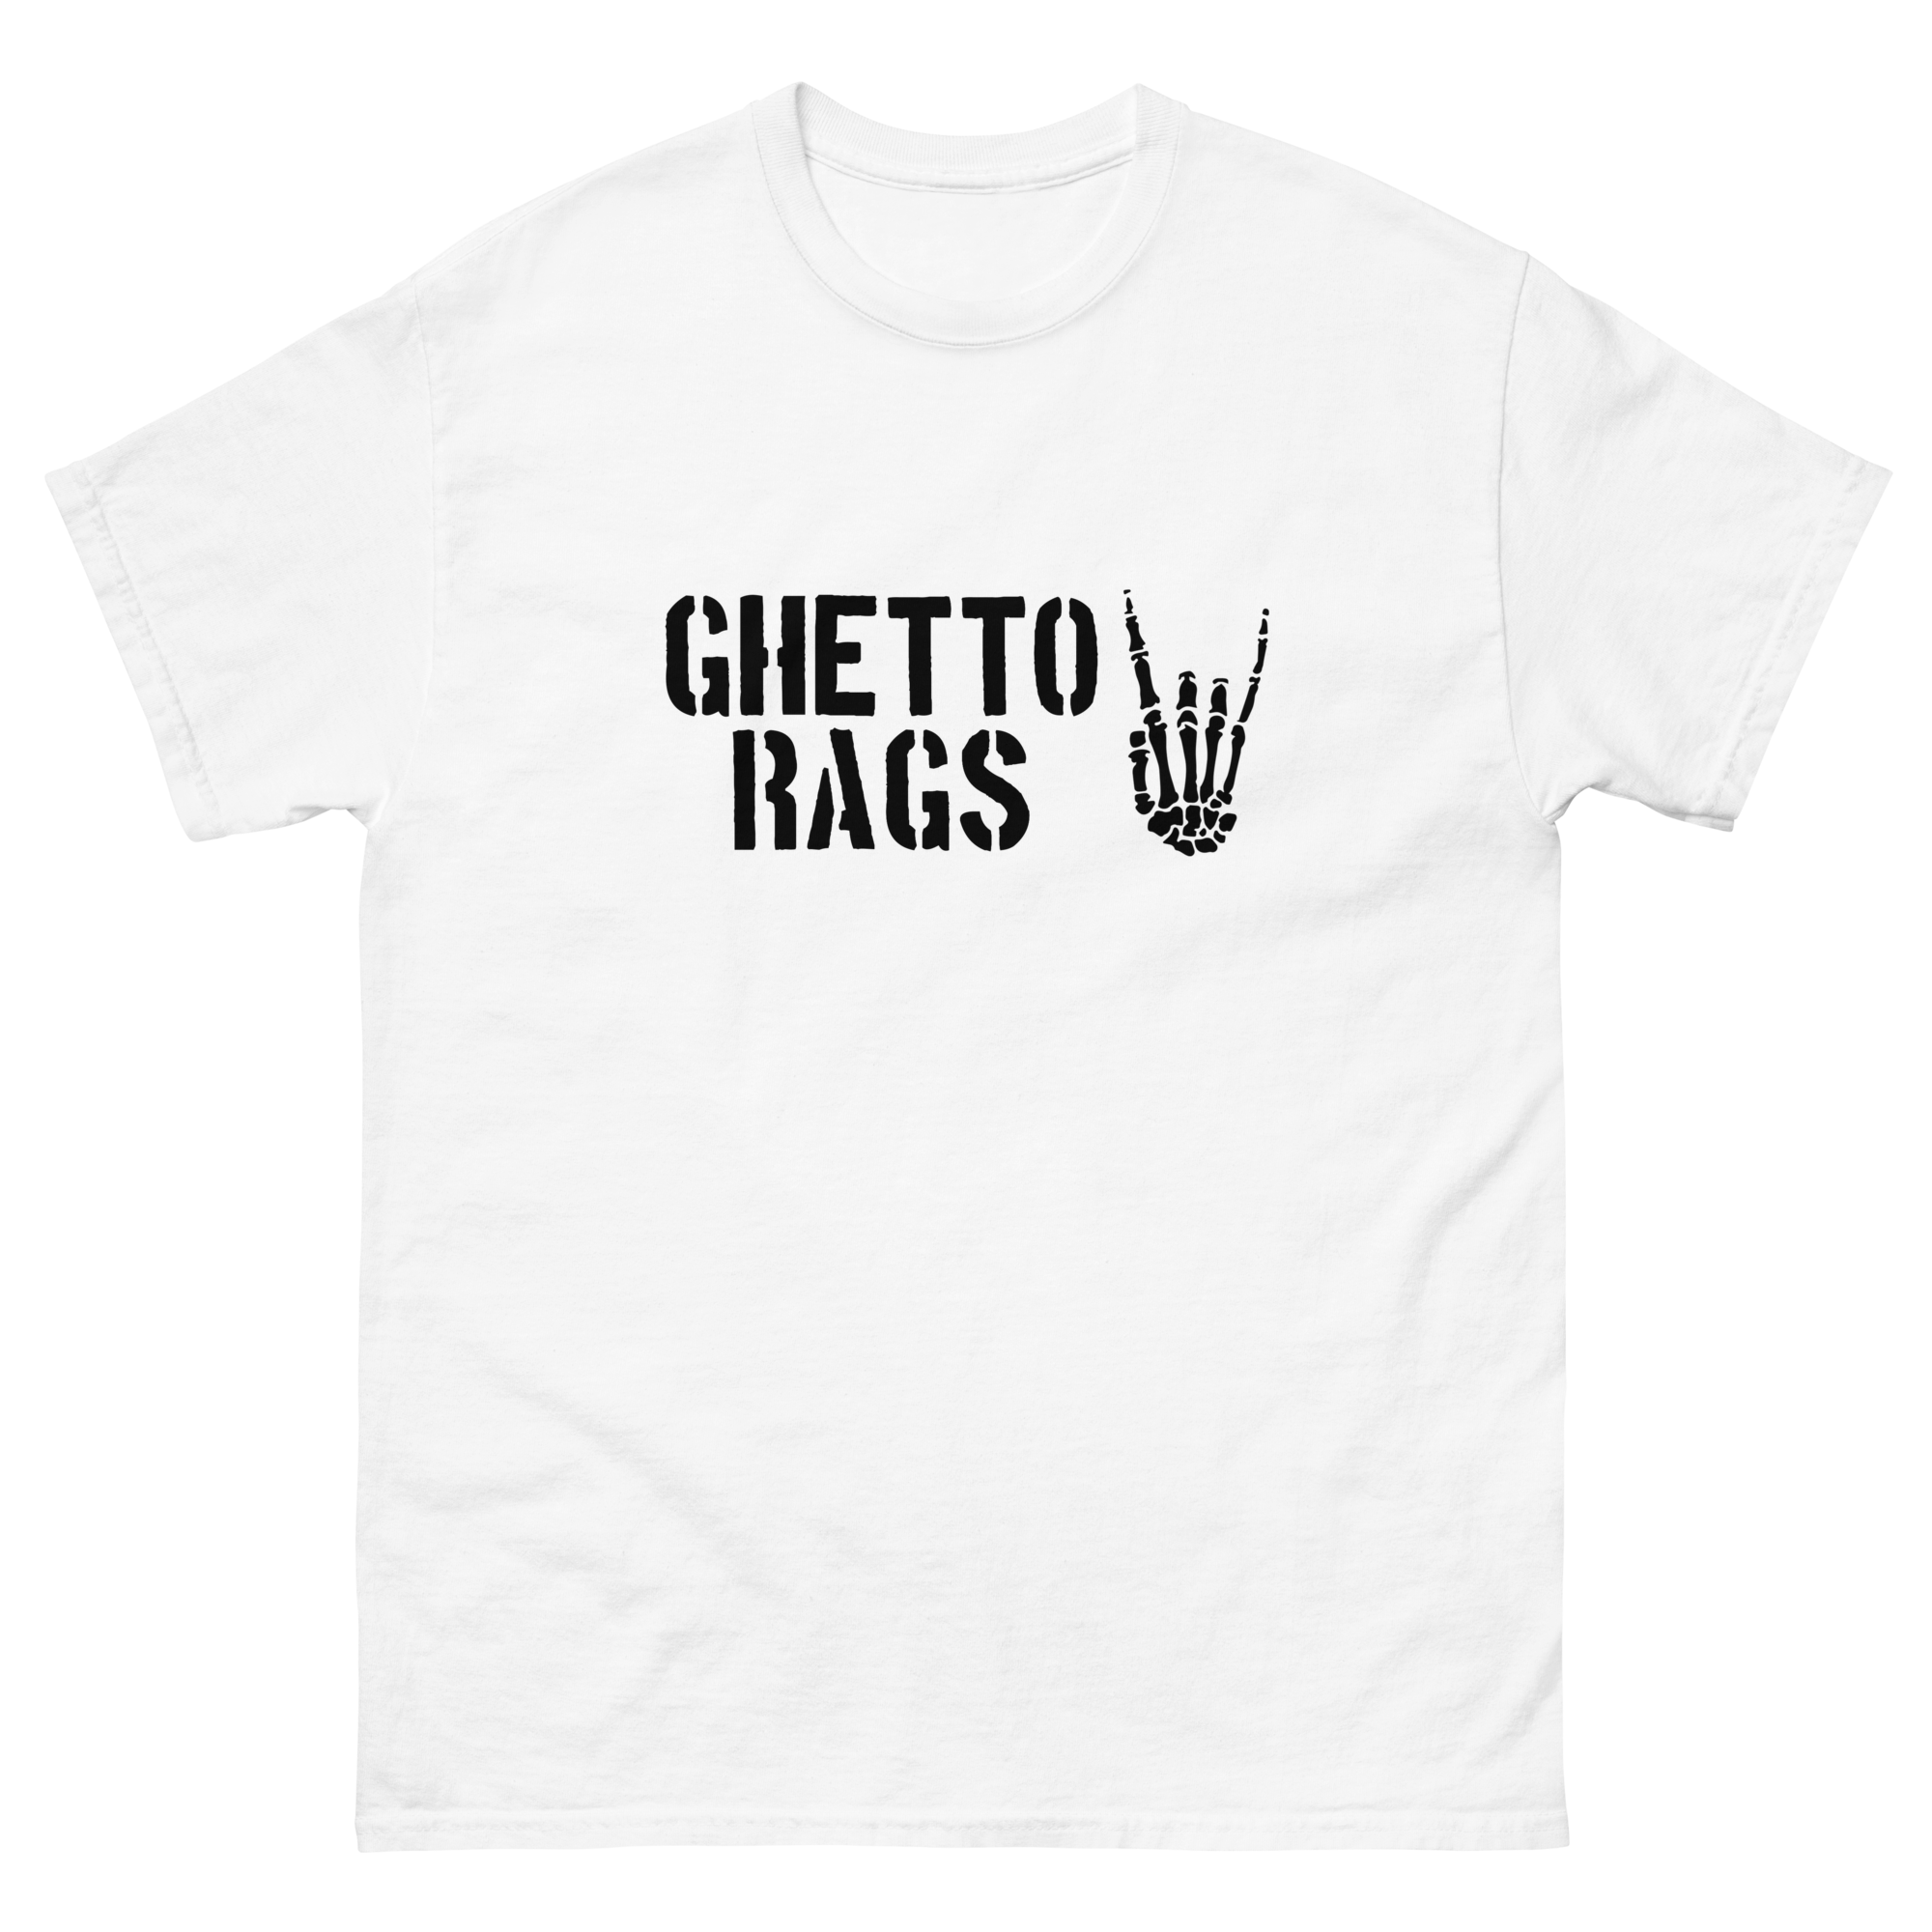 Ghetto Rags You Decide